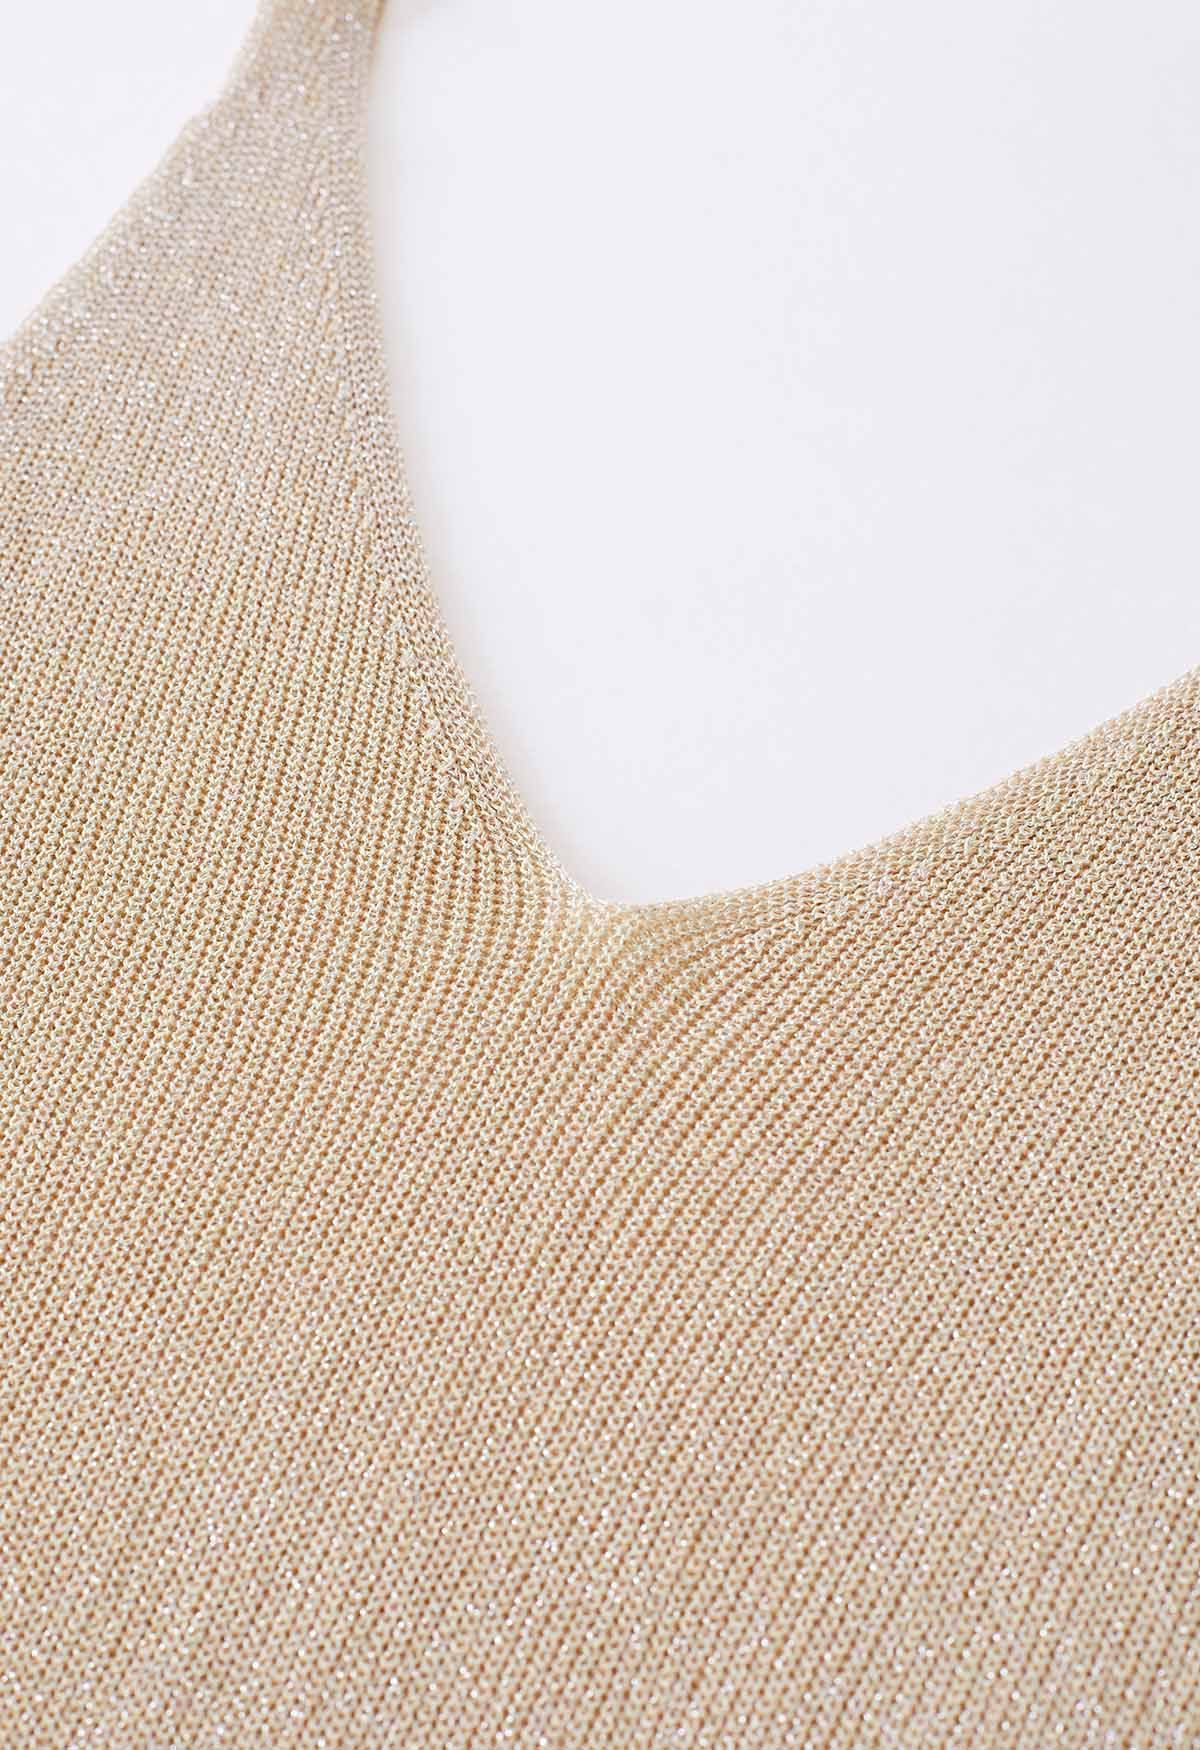 V-Neck Shimmer Knit Tank Top in Light Tan